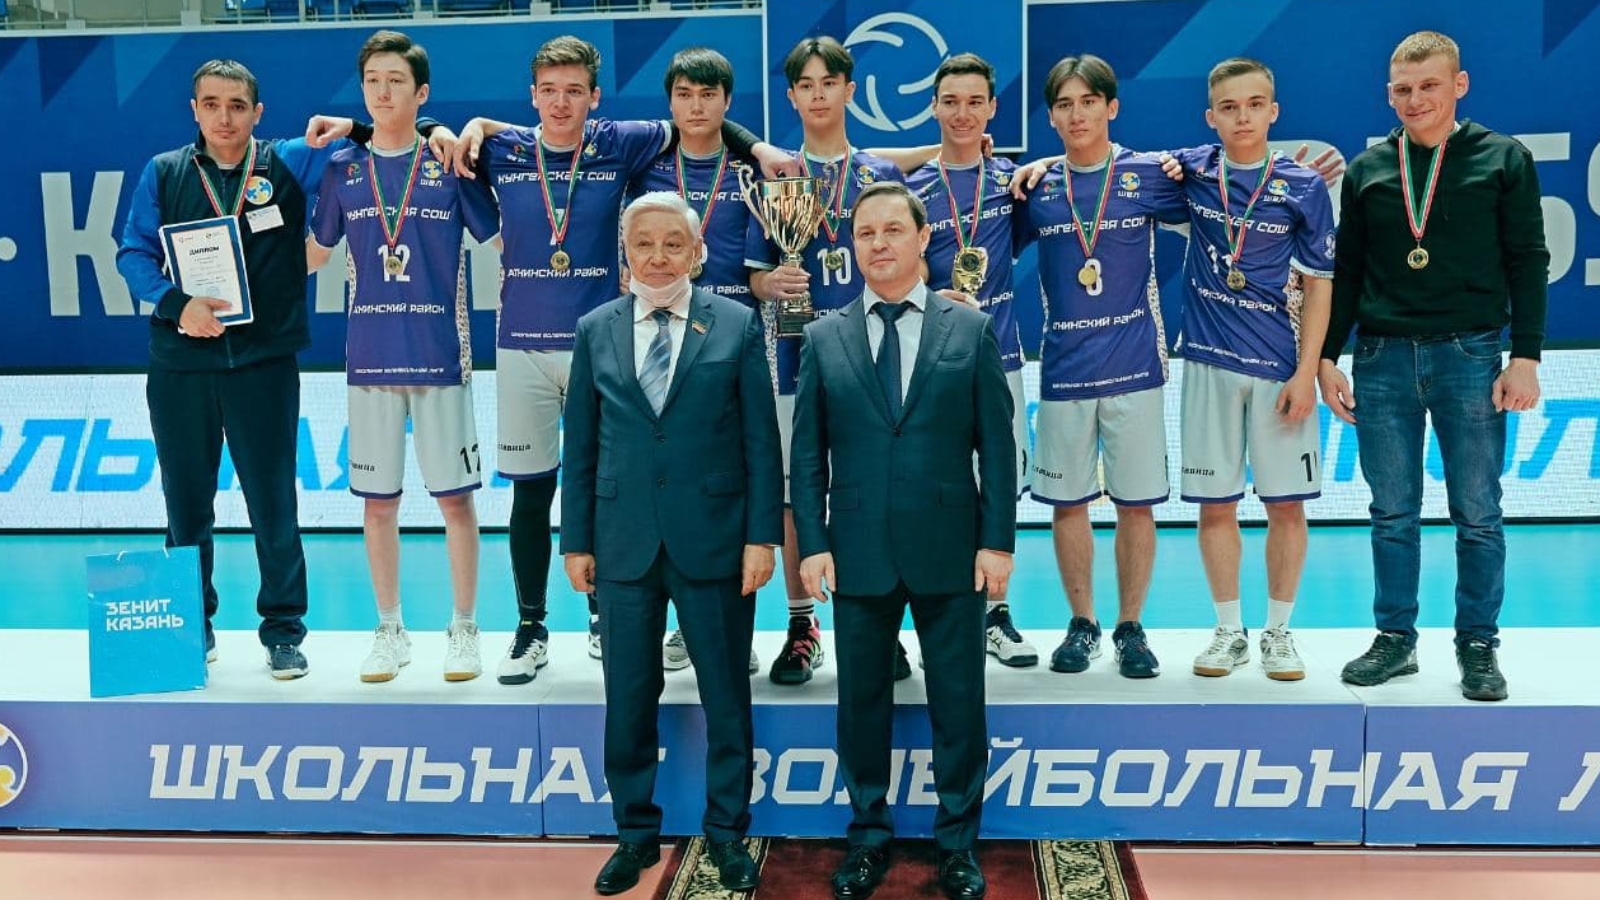 Күңгәр мәктәбе волейболчылары – Татарстан чемпионы